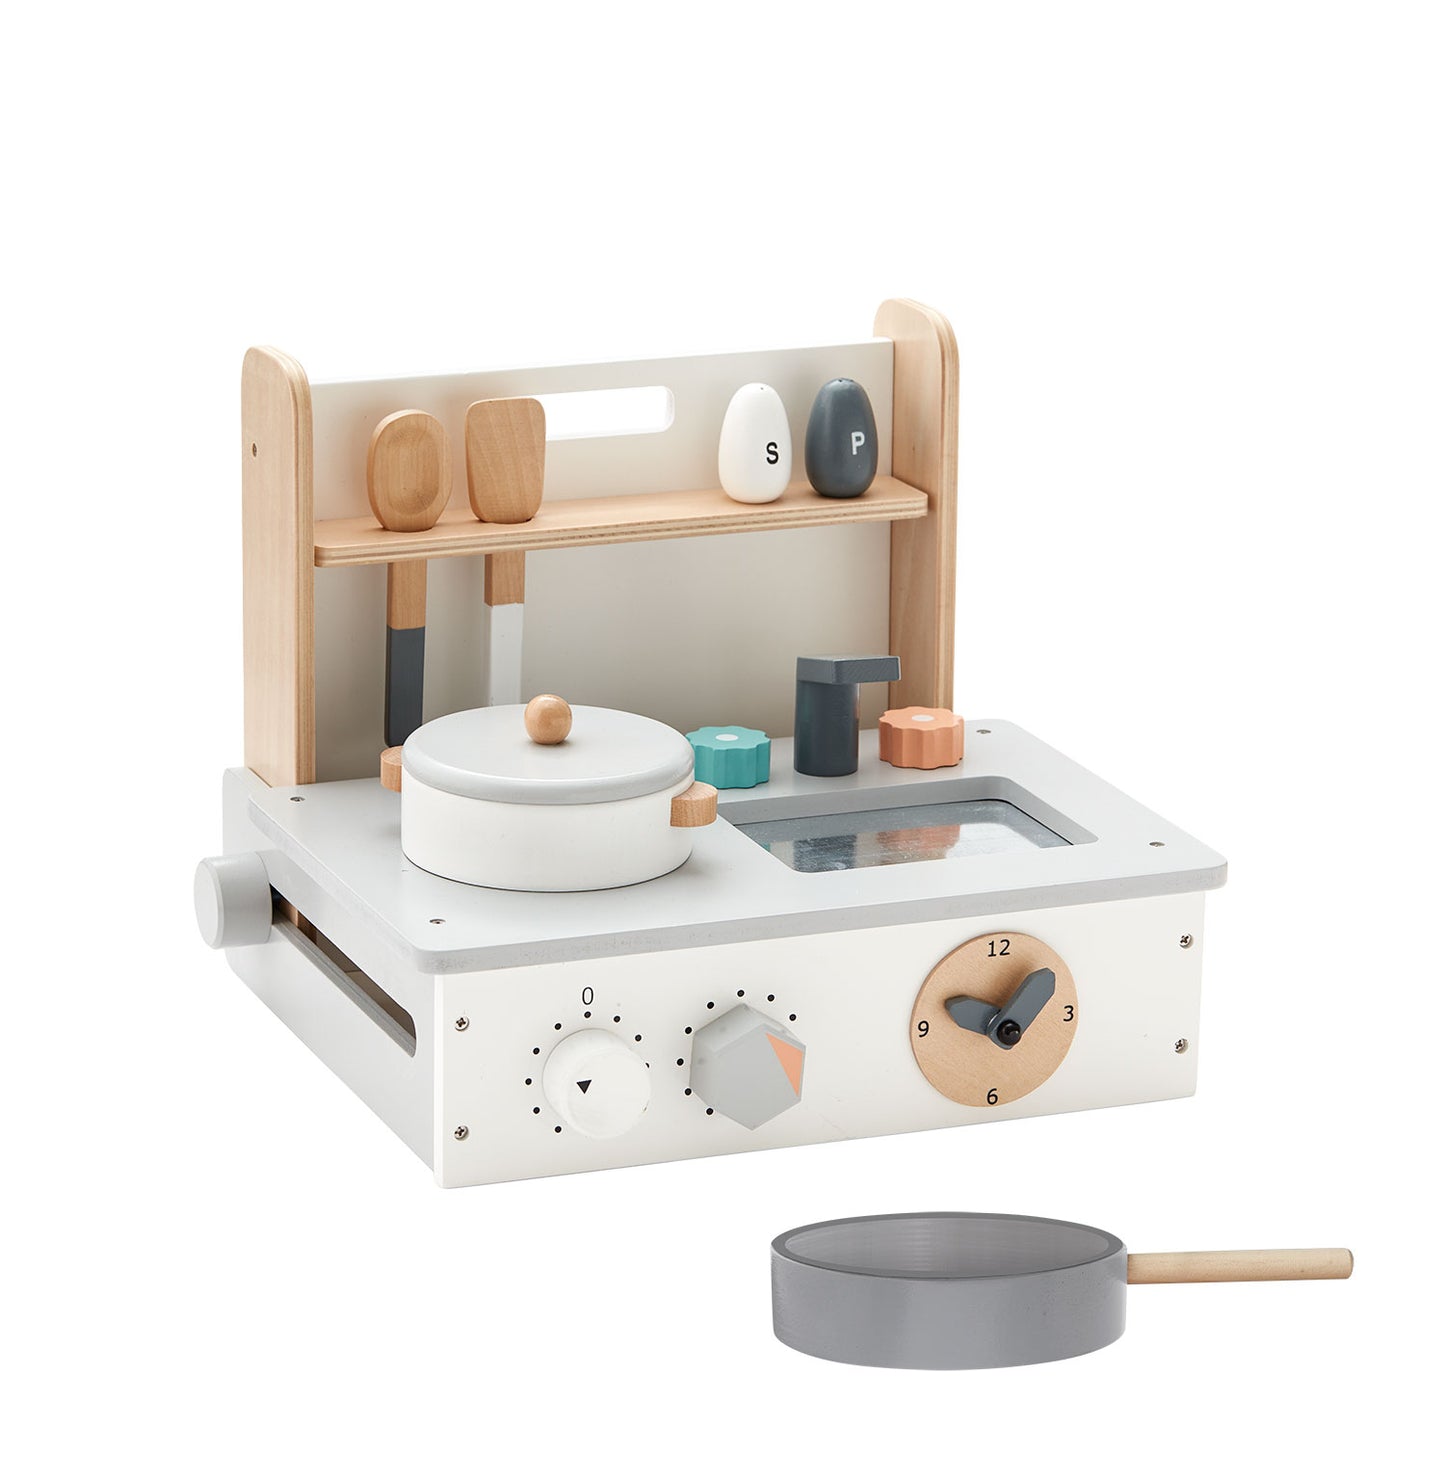 KidsConcept - Mini play kitchen